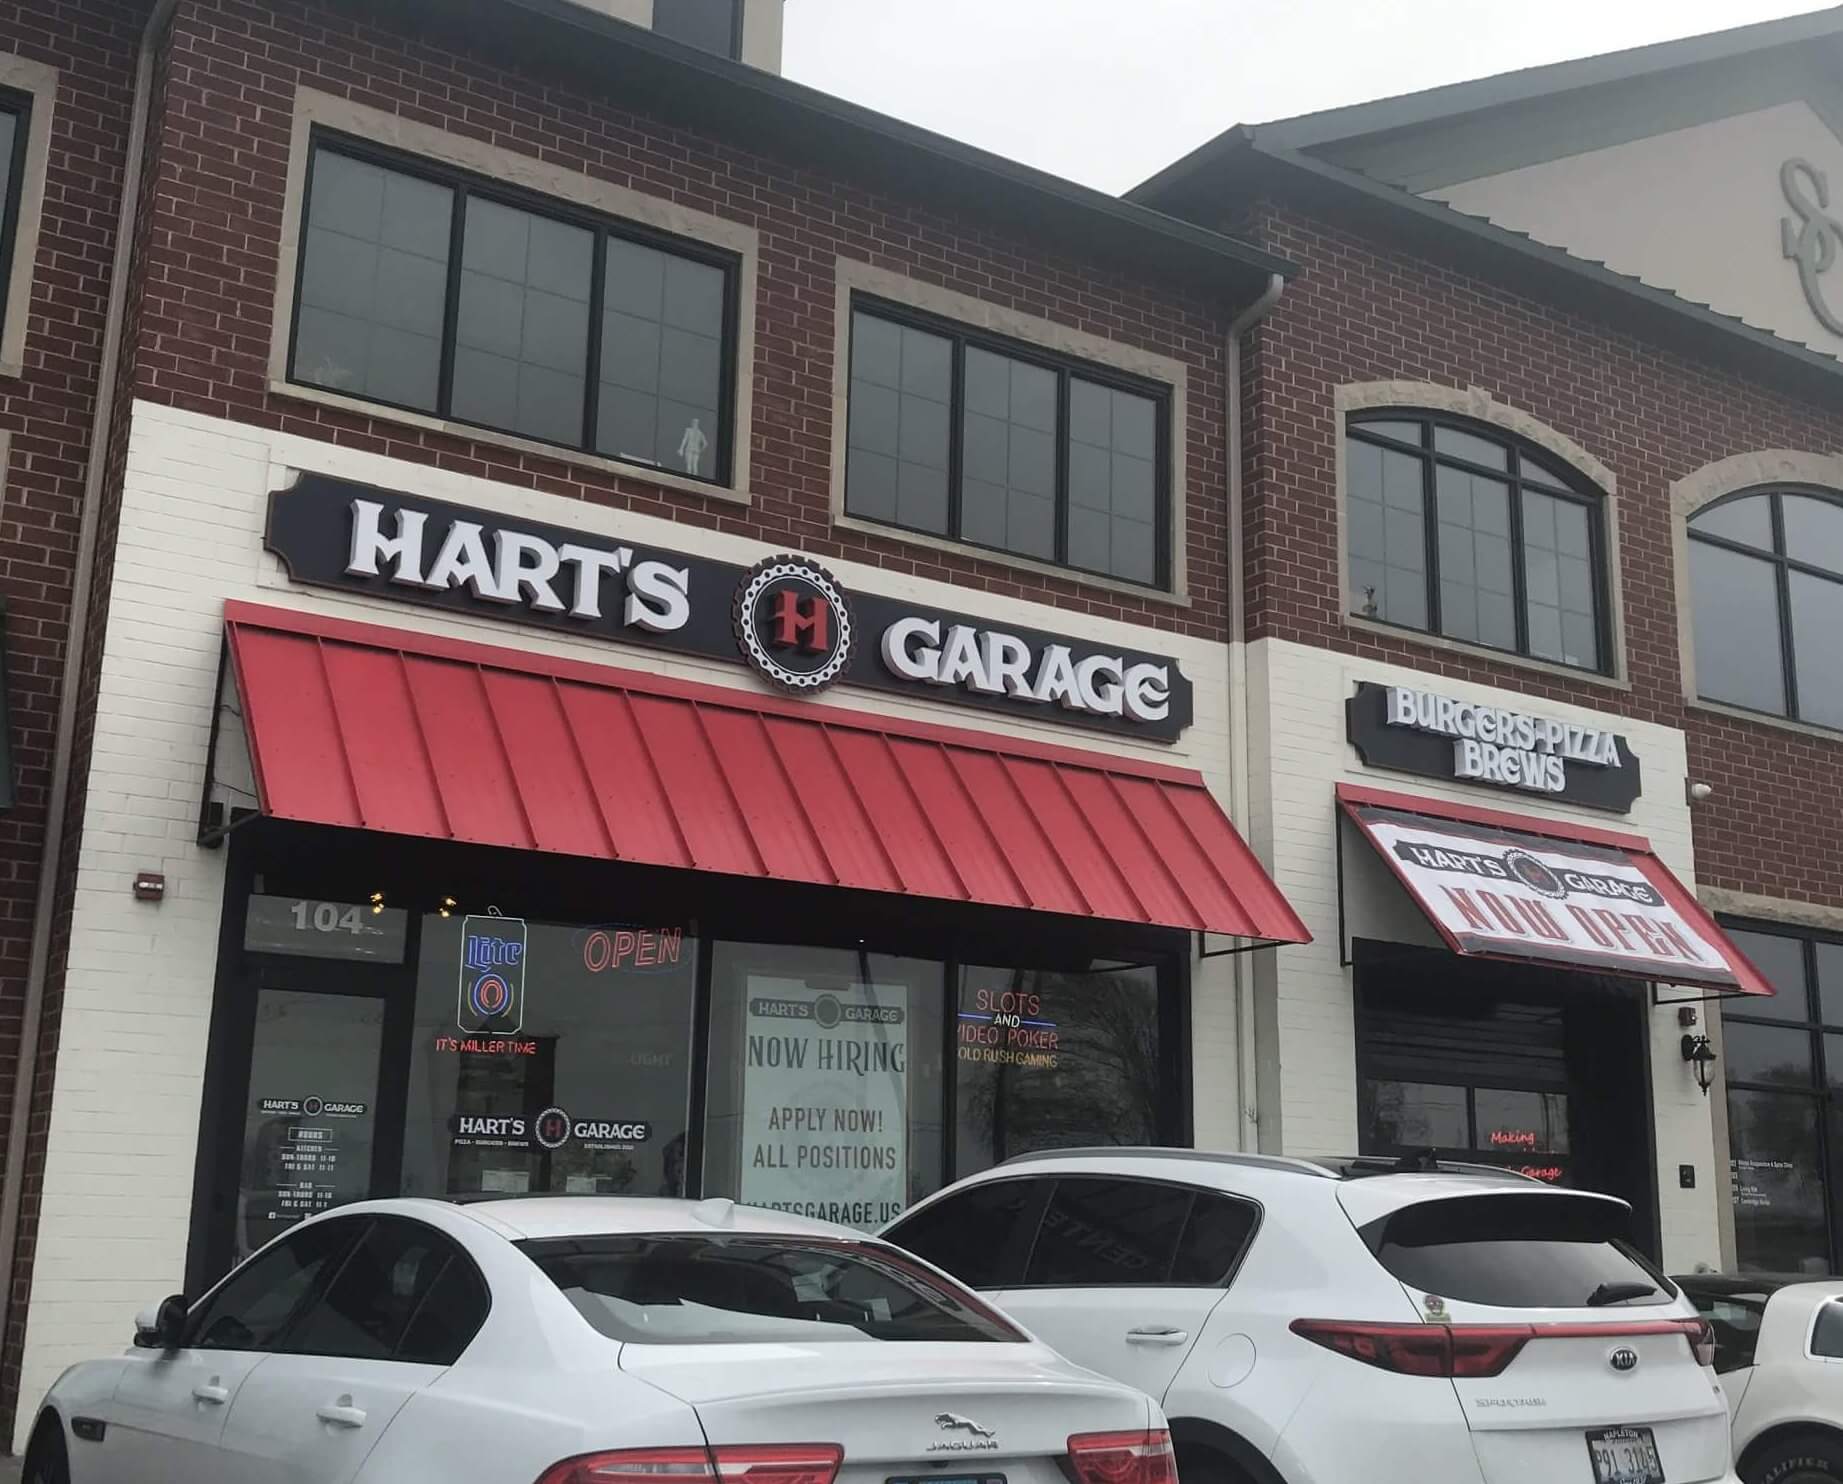 Hart’s Garage